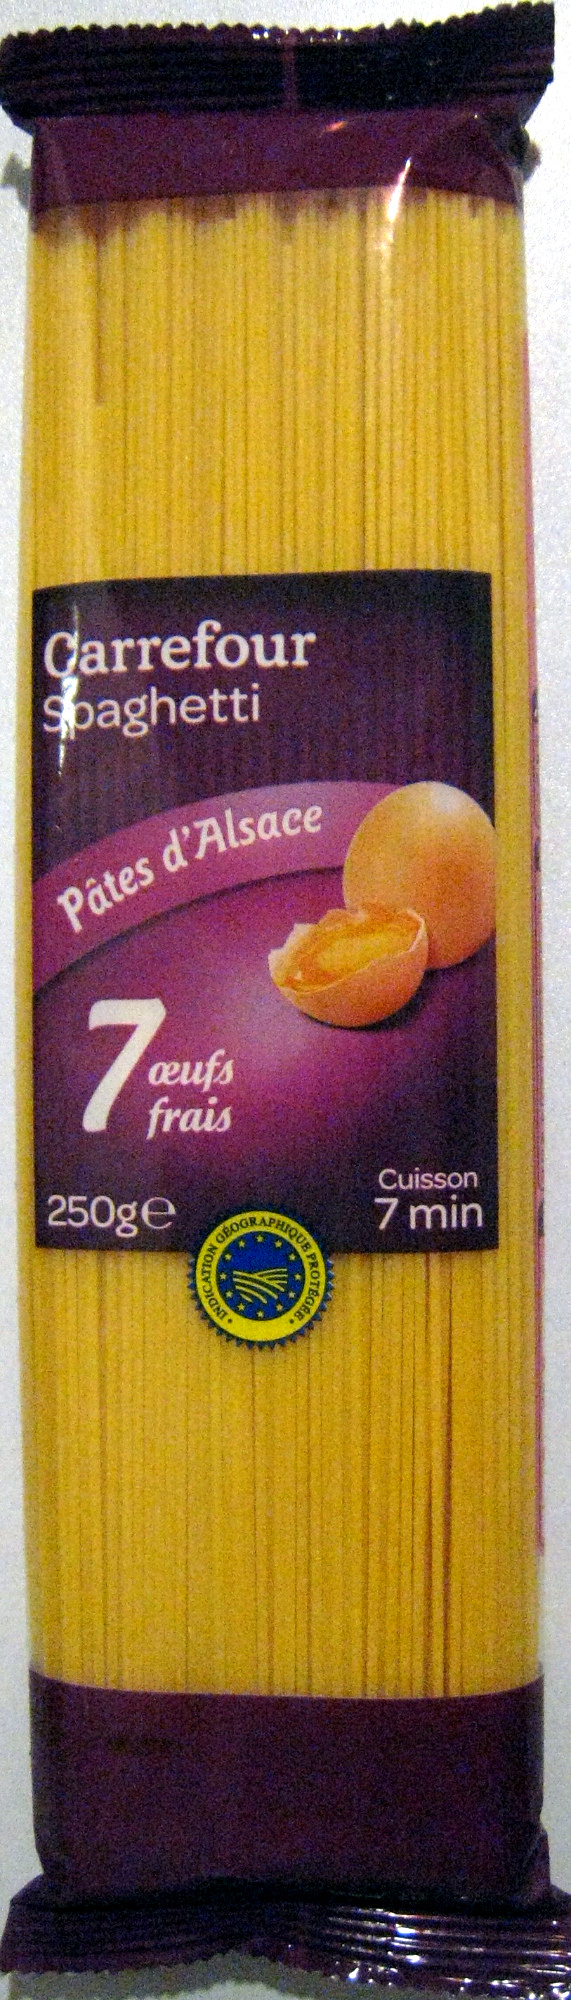 Spaghetti Pâtes d'Alsace - Product - fr